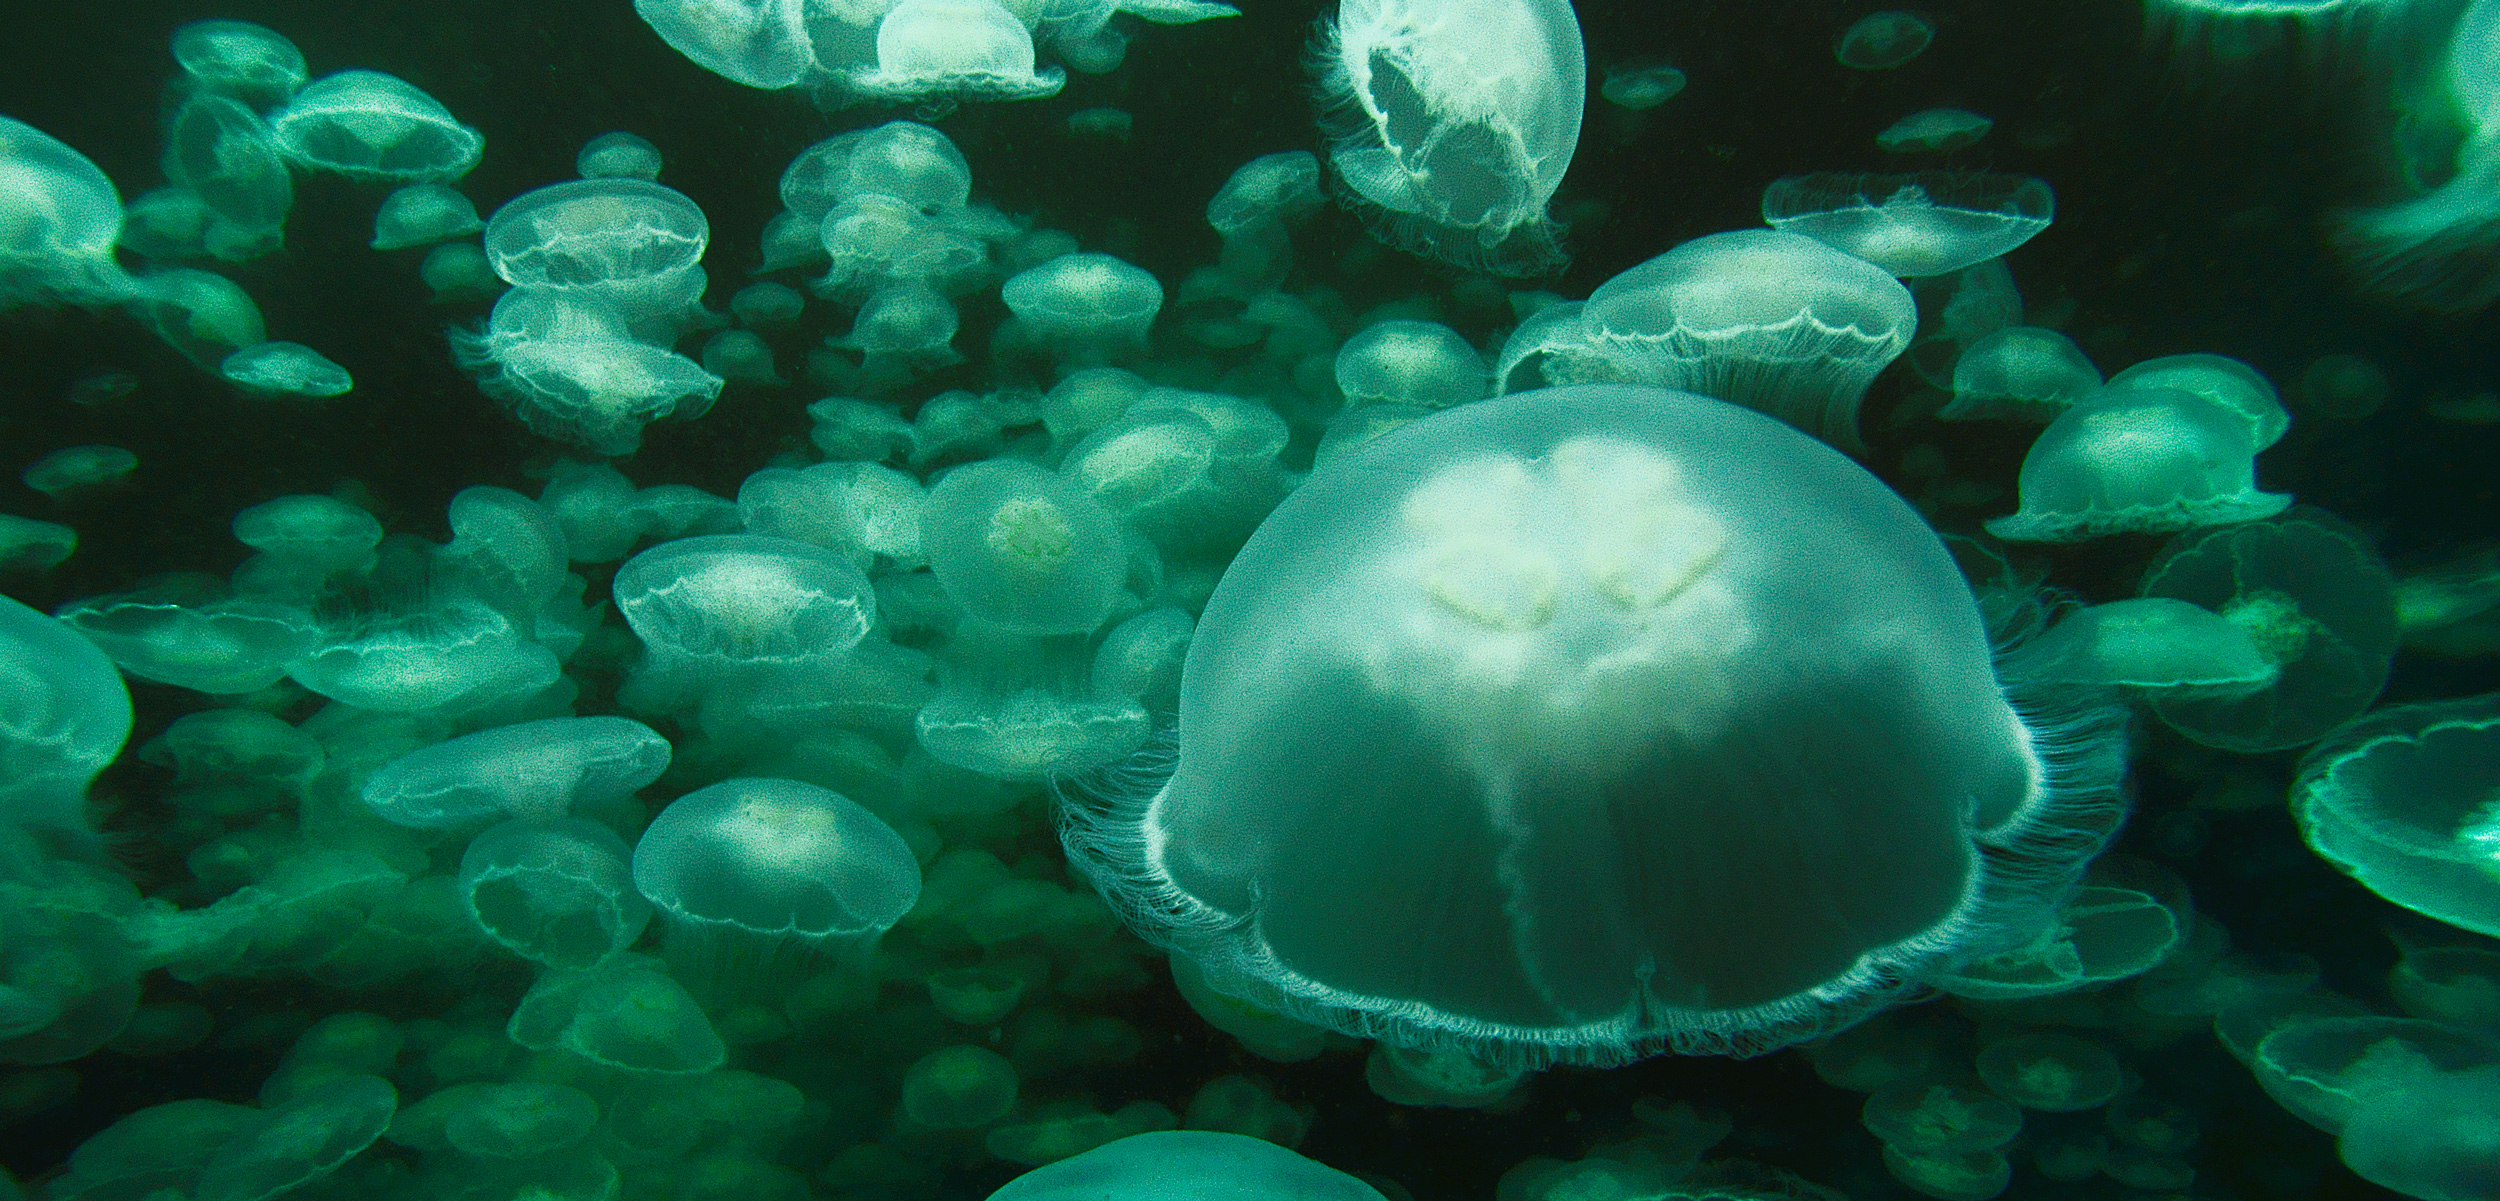 swarm of moon jellies